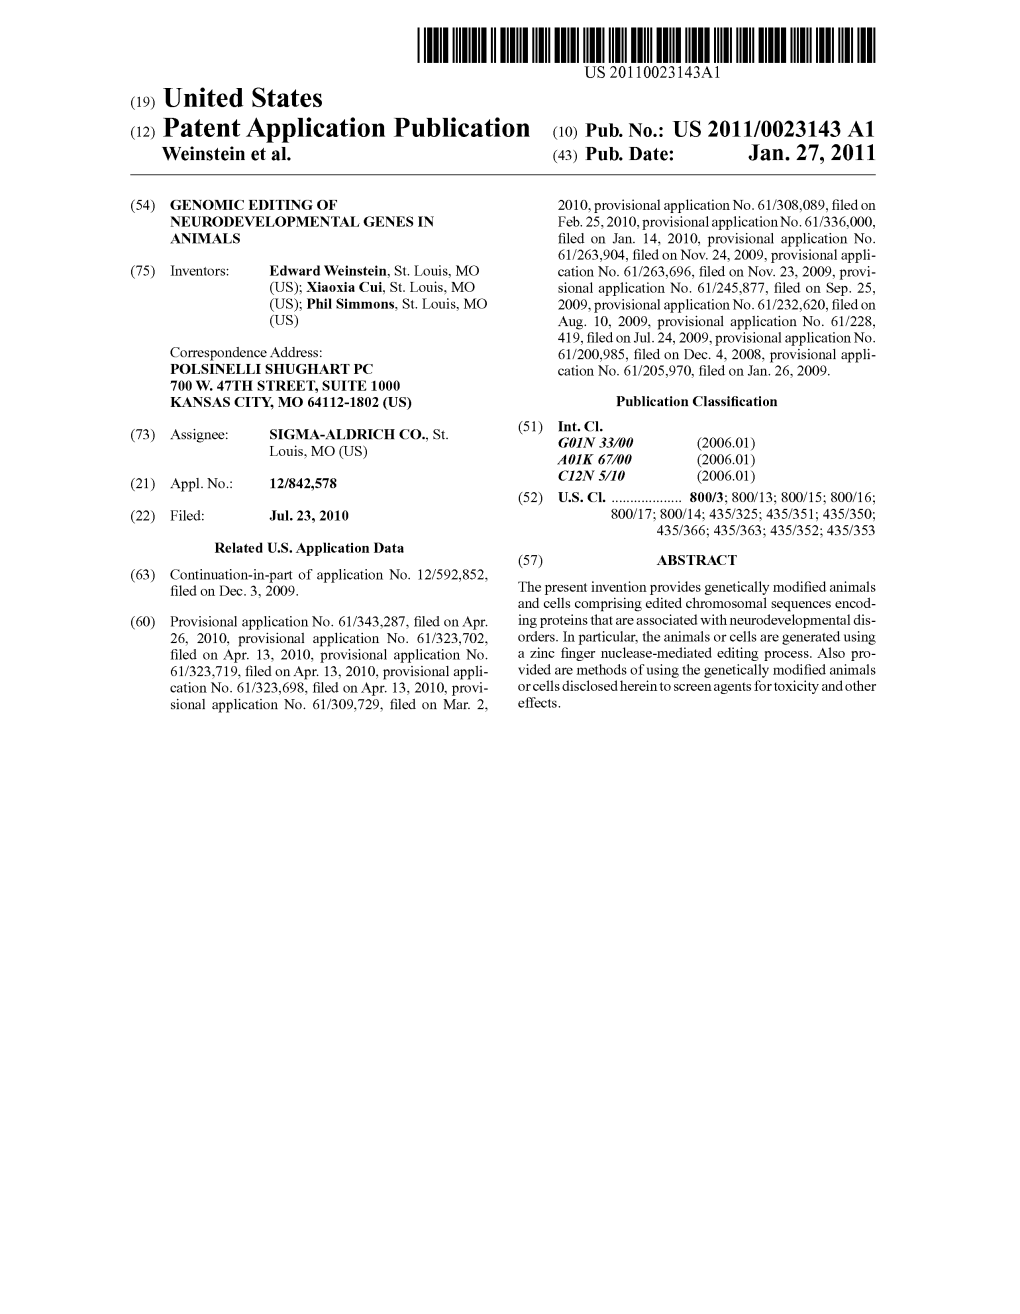 (2) Patent Application Publication (10) Pub. No.: US 2011/0023143 A1 Weinstein Et Al